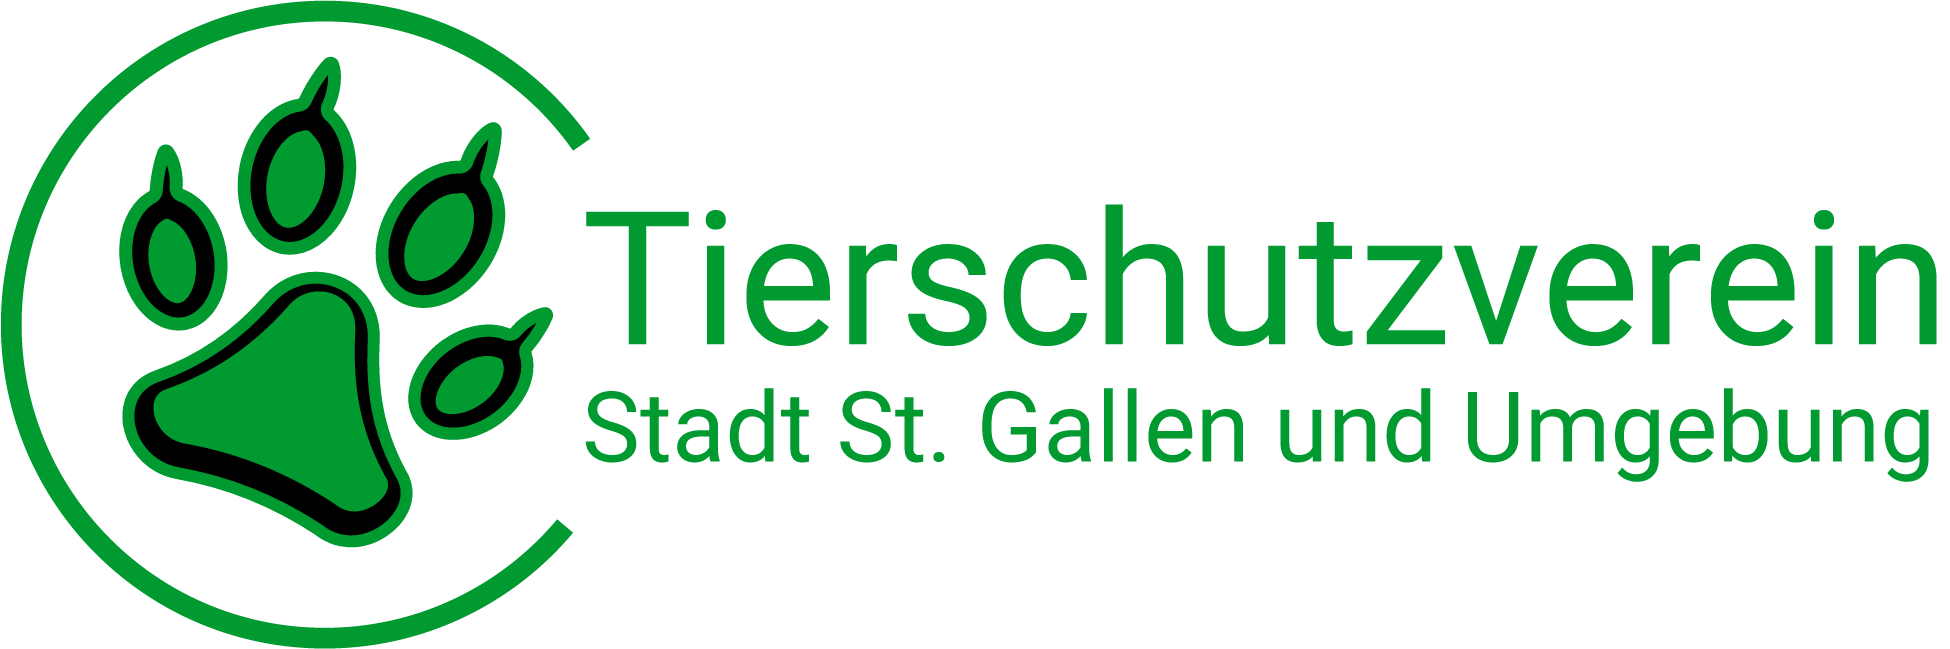 Tierschutzverein der Stadt St. Gallen und Umgebung